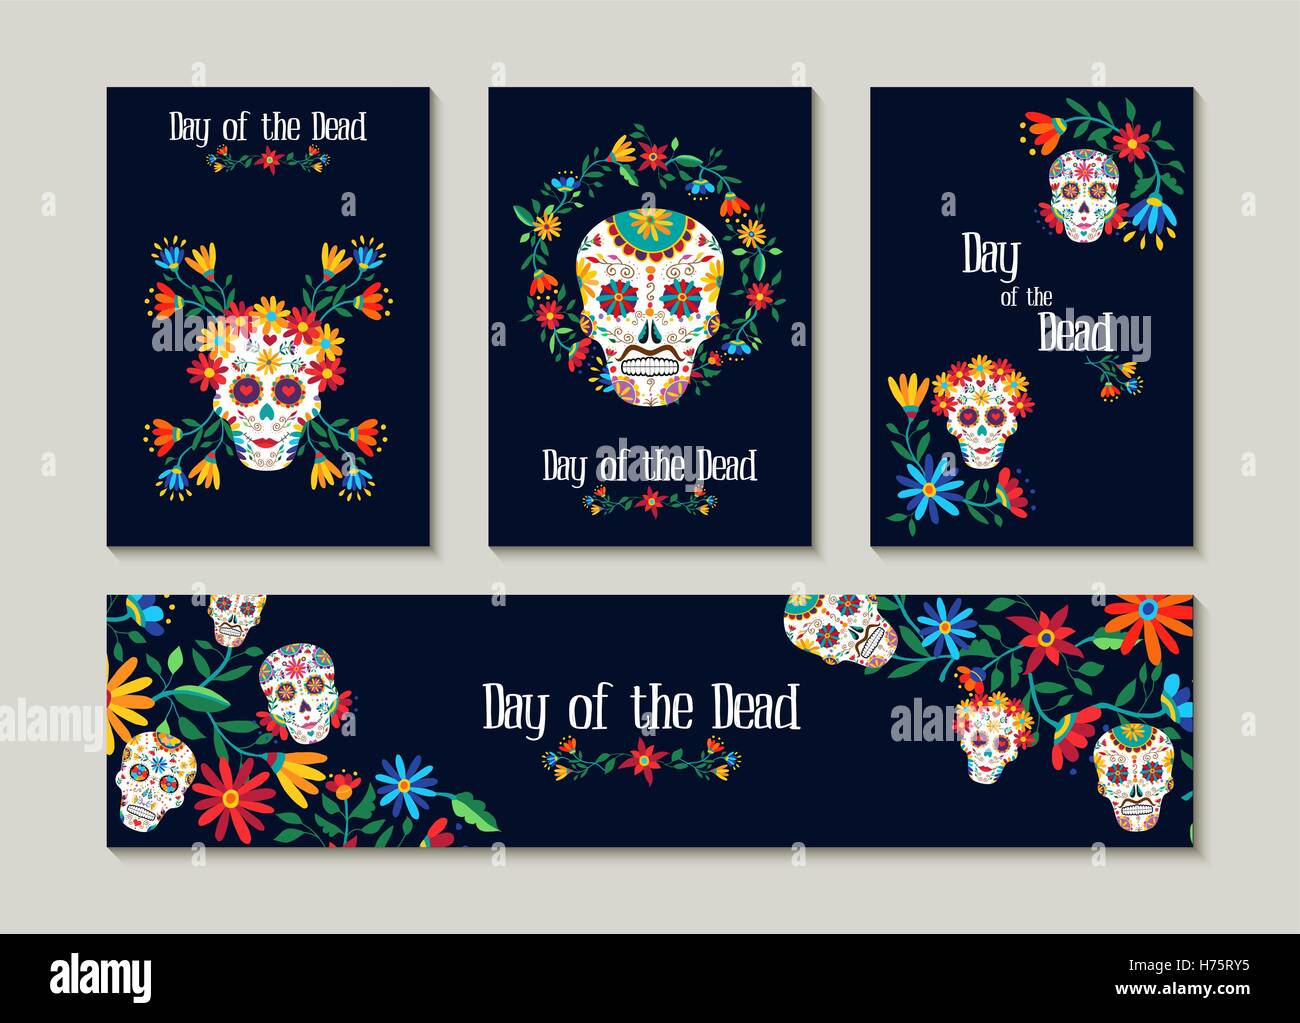 Le Jour des morts pour l'ensemble de modèle carte de souhaits, l'étiquette ou tag. Décoration mexicaine traditionnelle avec l'art et des fleurs colorées. Spe1 Illustration de Vecteur